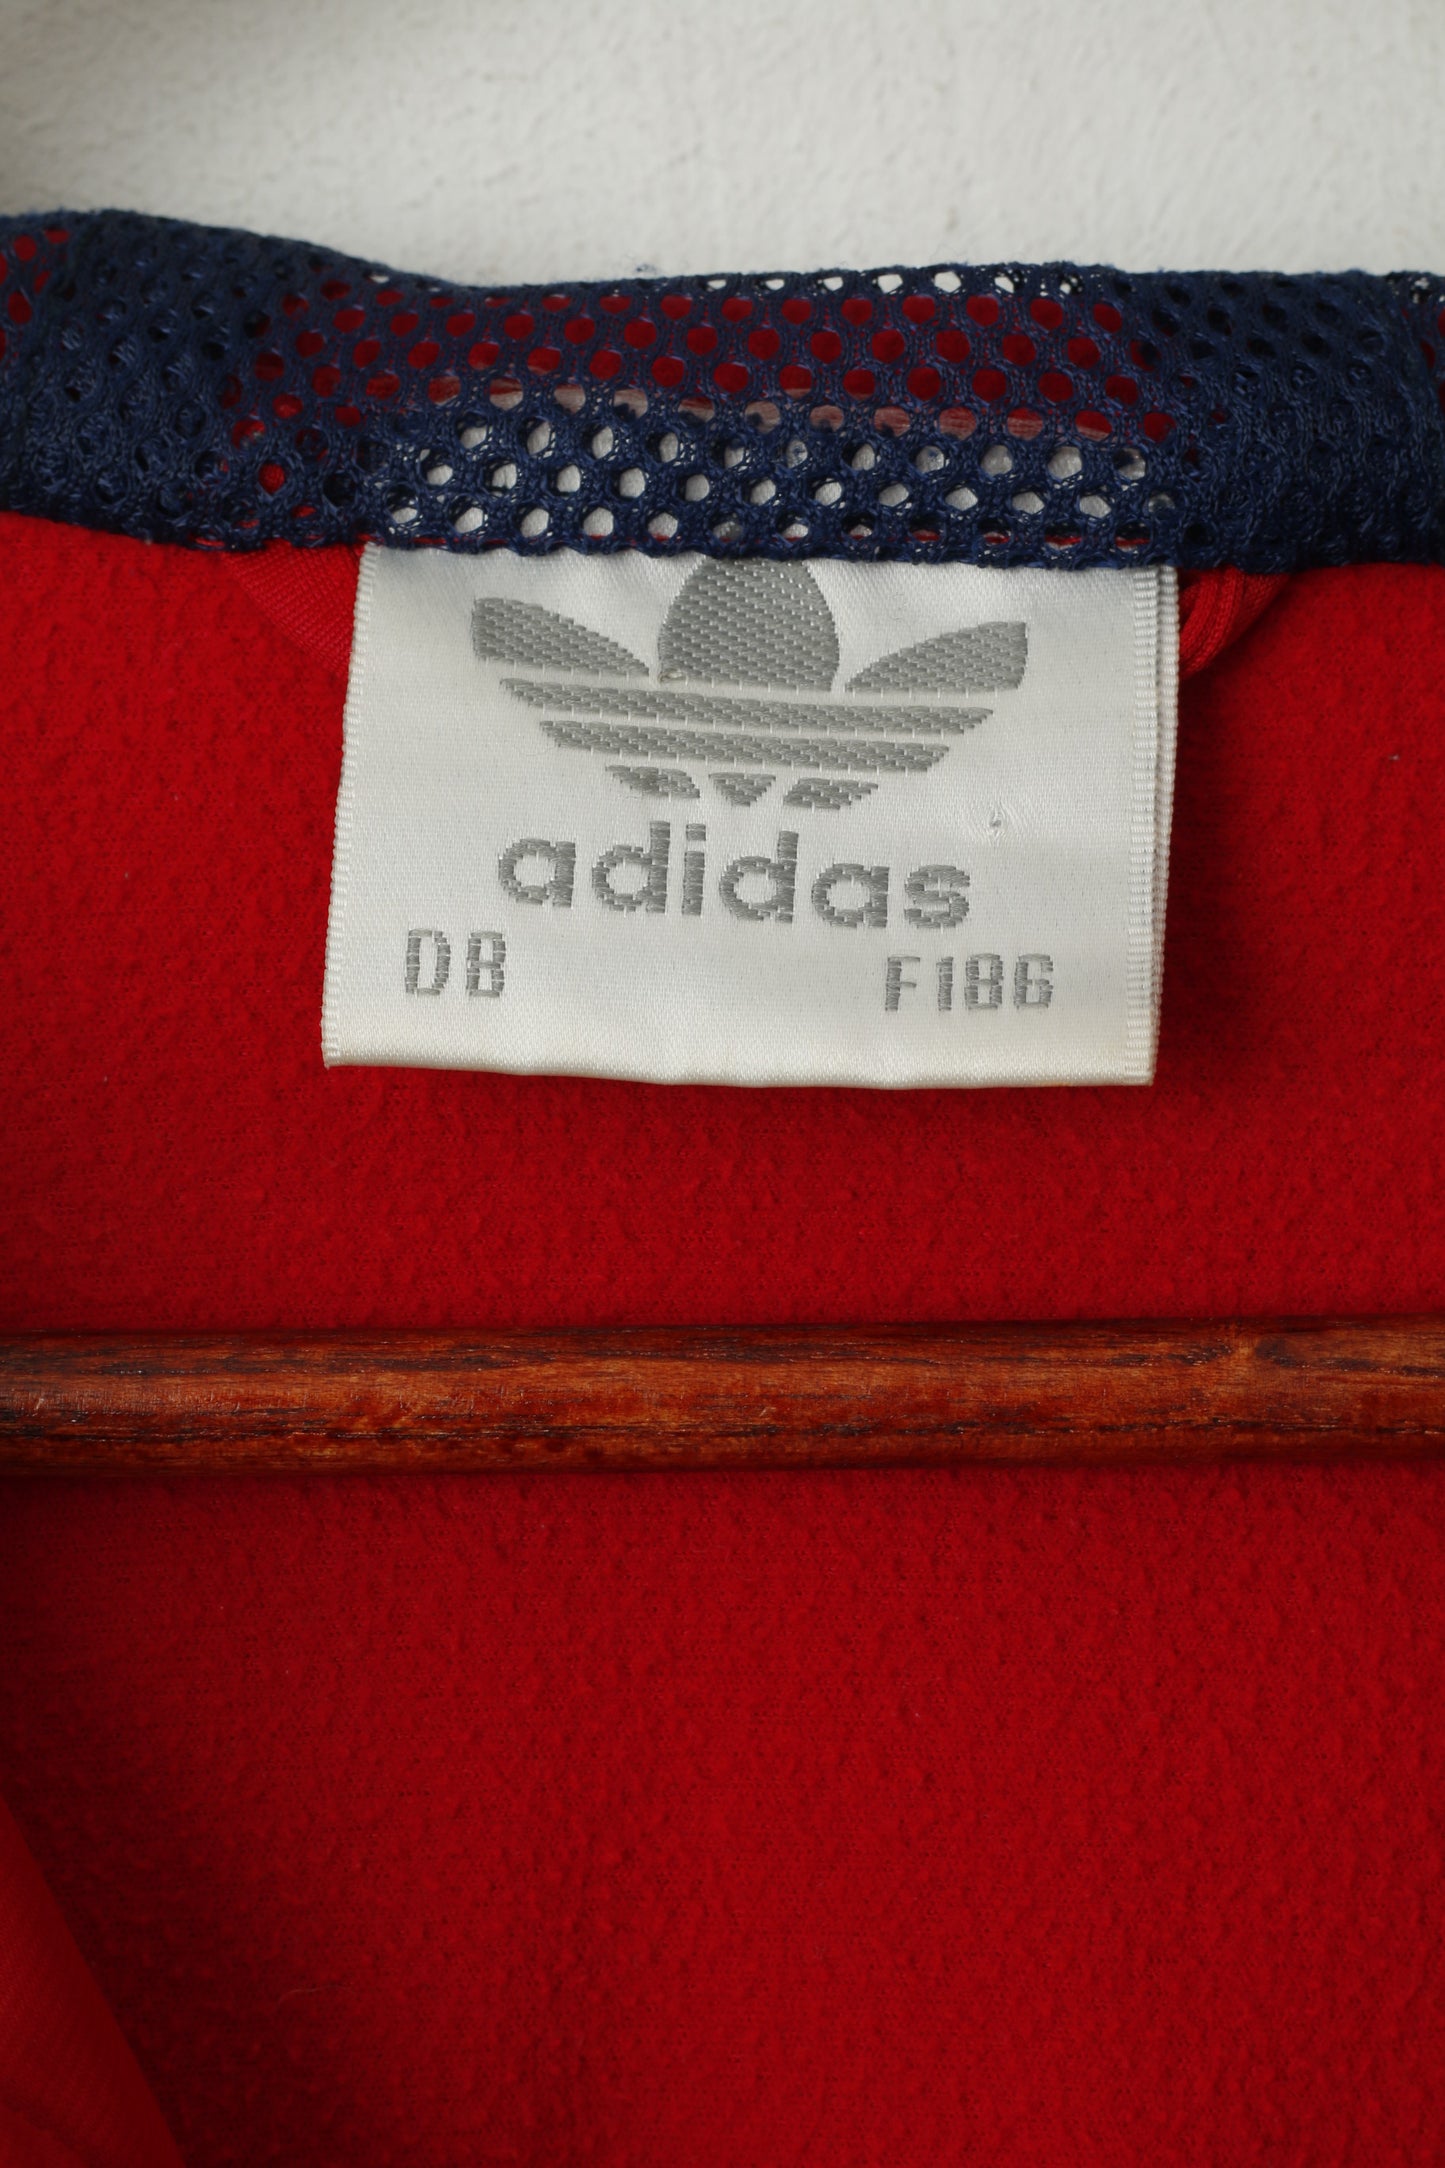 Adidas Men M Sweatshirt Shiny Red Vintage Full Zipper Hooded Oldschool Top